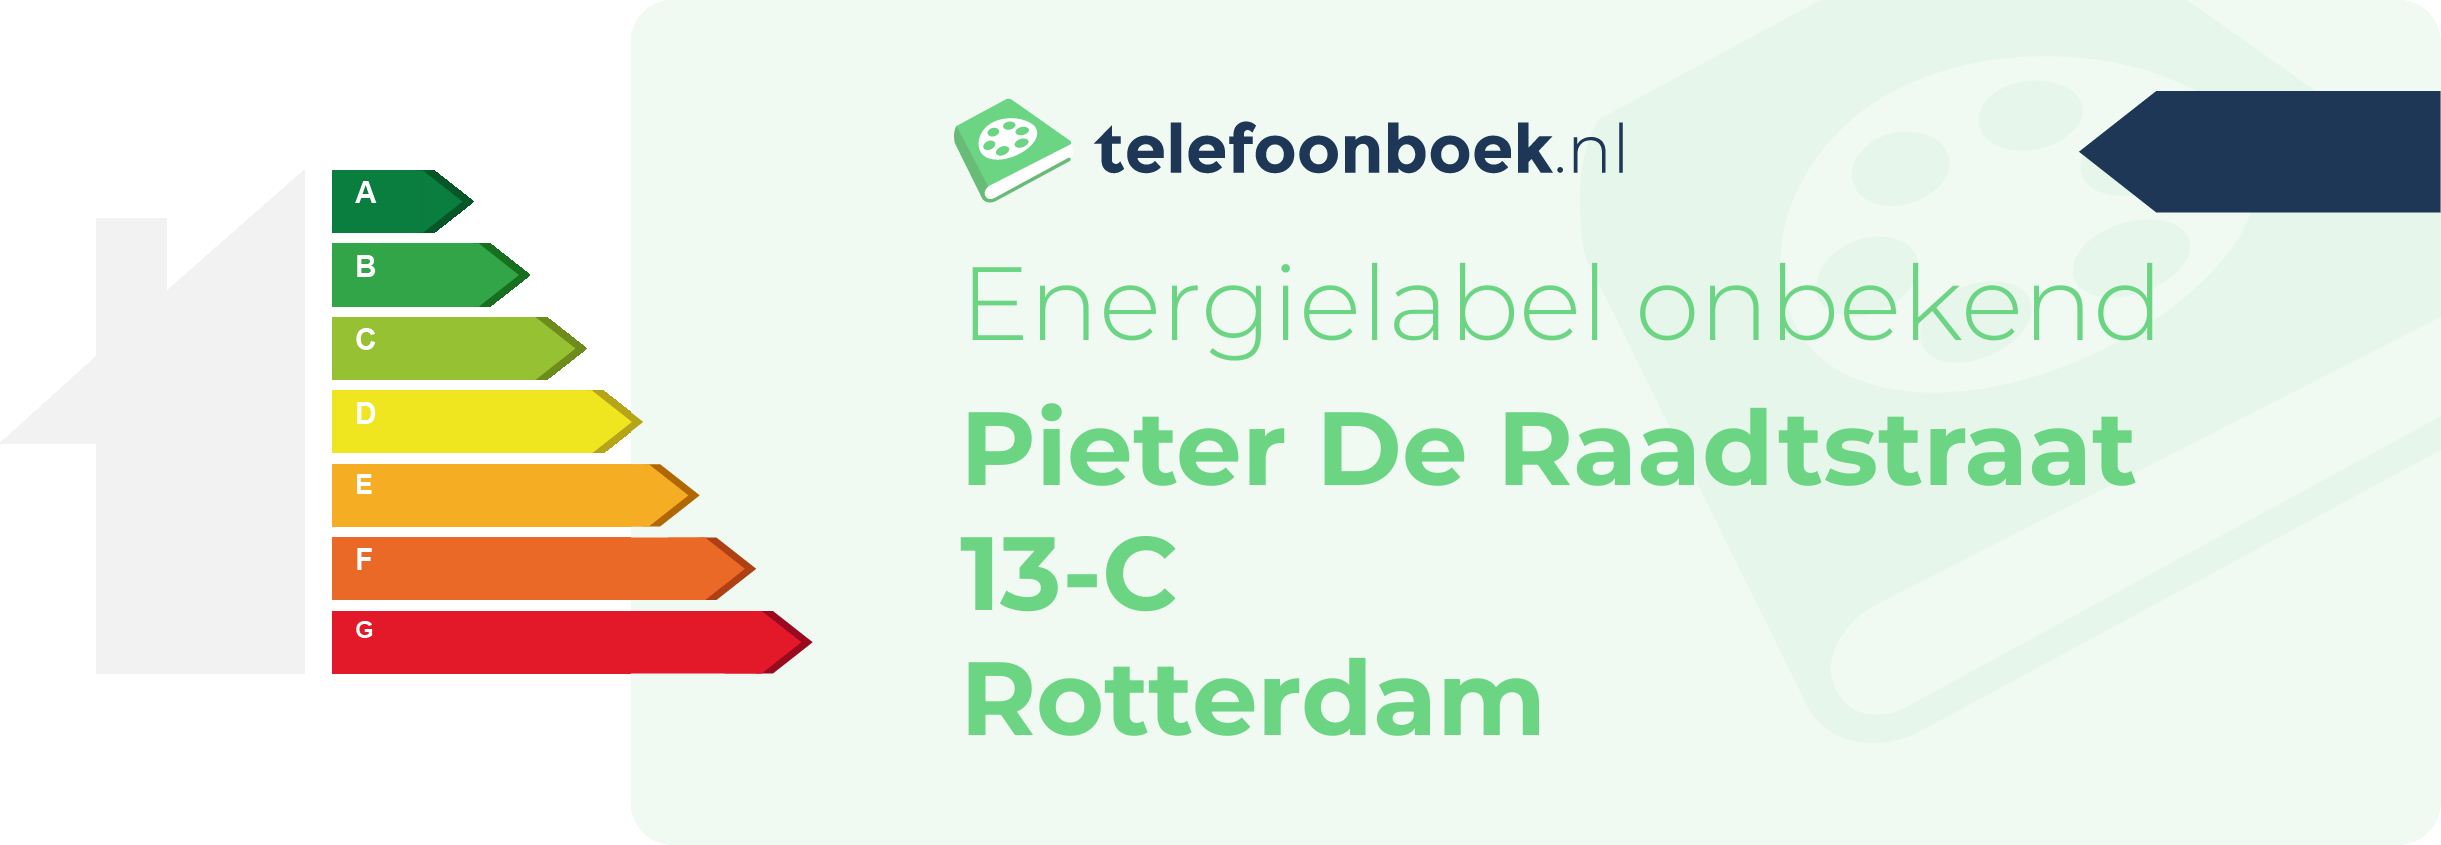 Energielabel Pieter De Raadtstraat 13-C Rotterdam